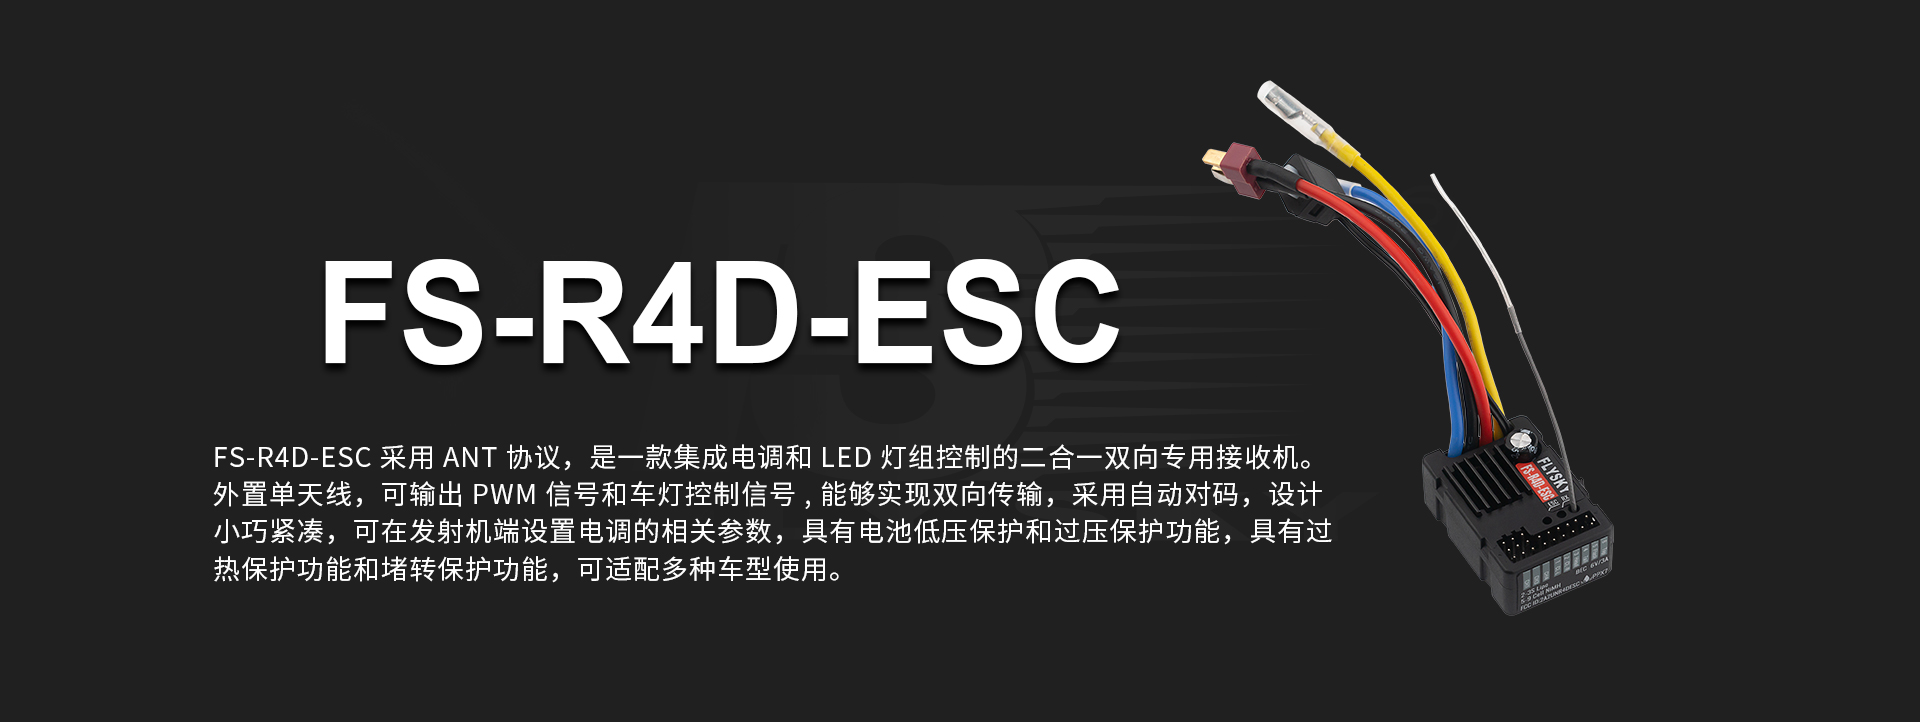 FS-R4D-ESC